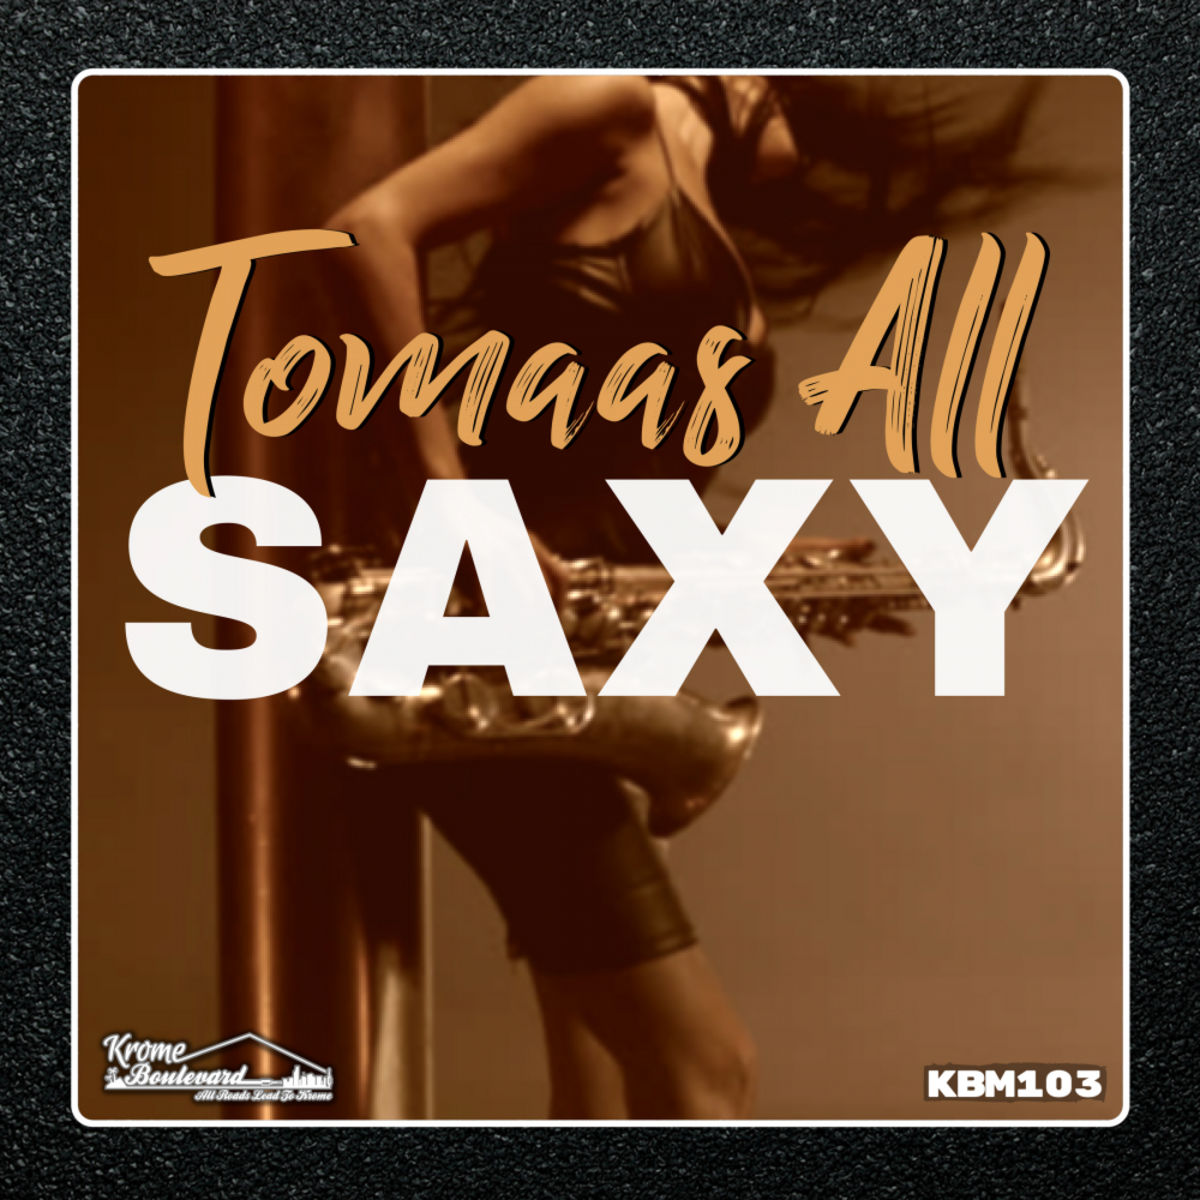 Tomaas All - Saxy / Krome Boulevard Music